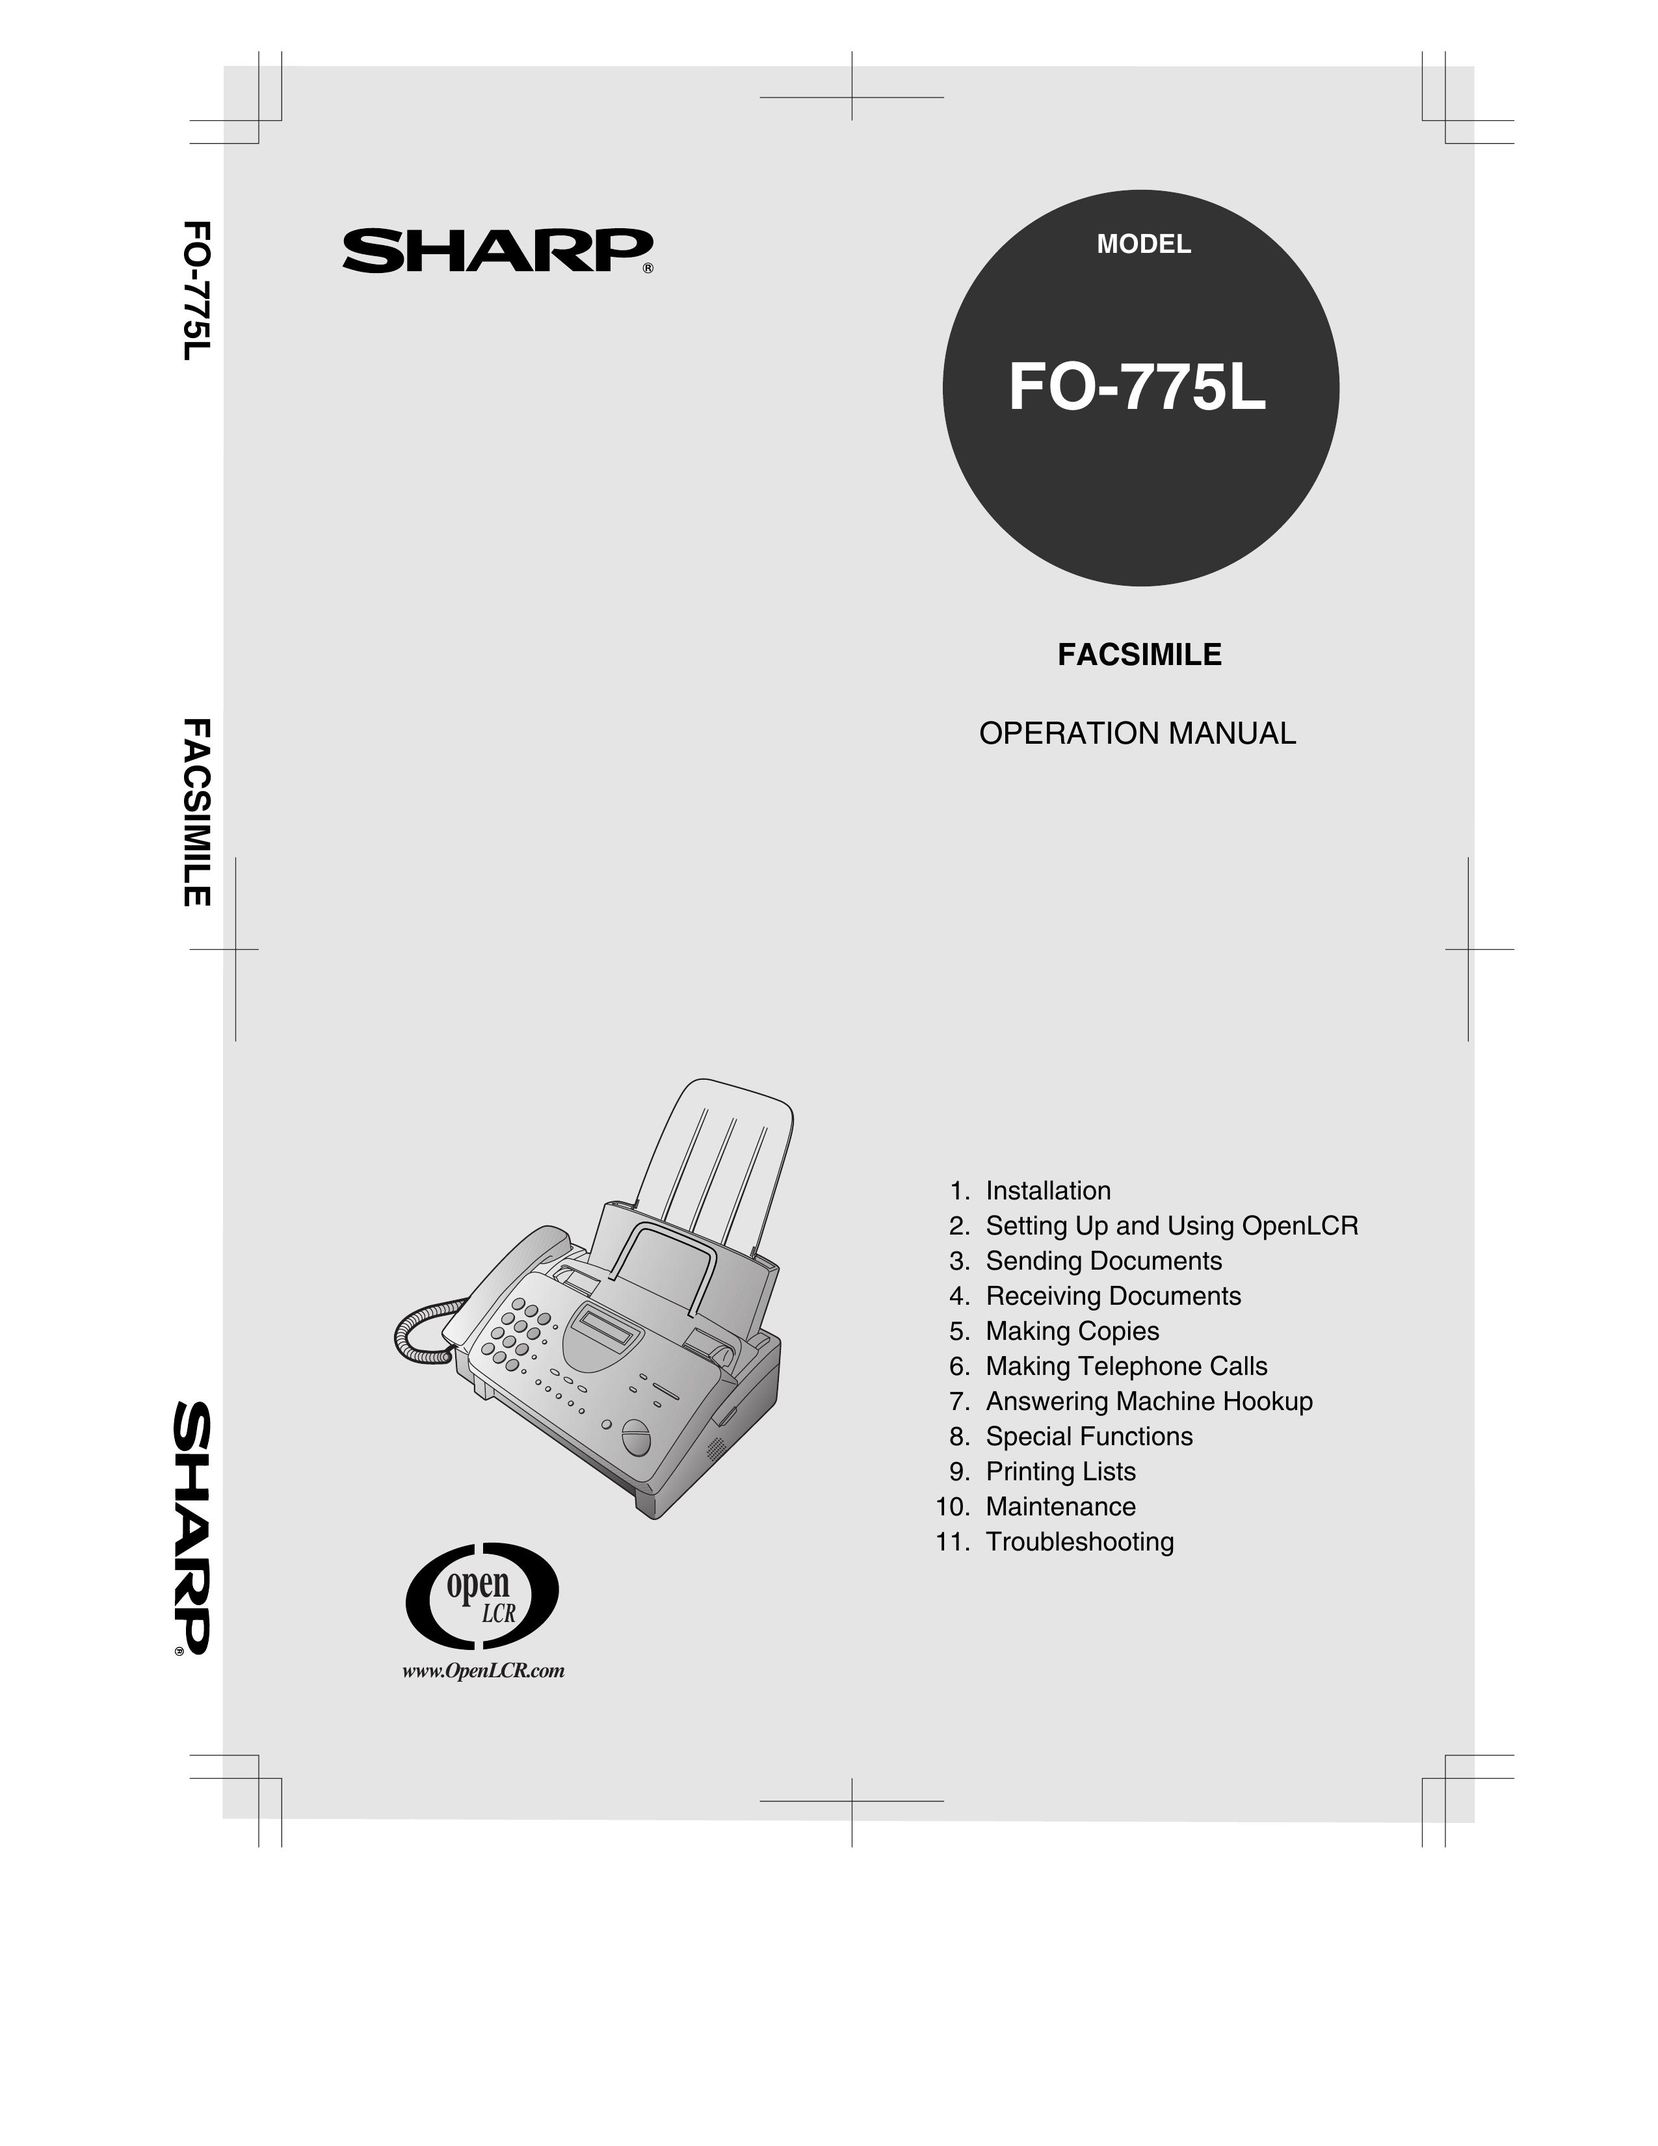 Sharp FO-775L Fax Machine User Manual